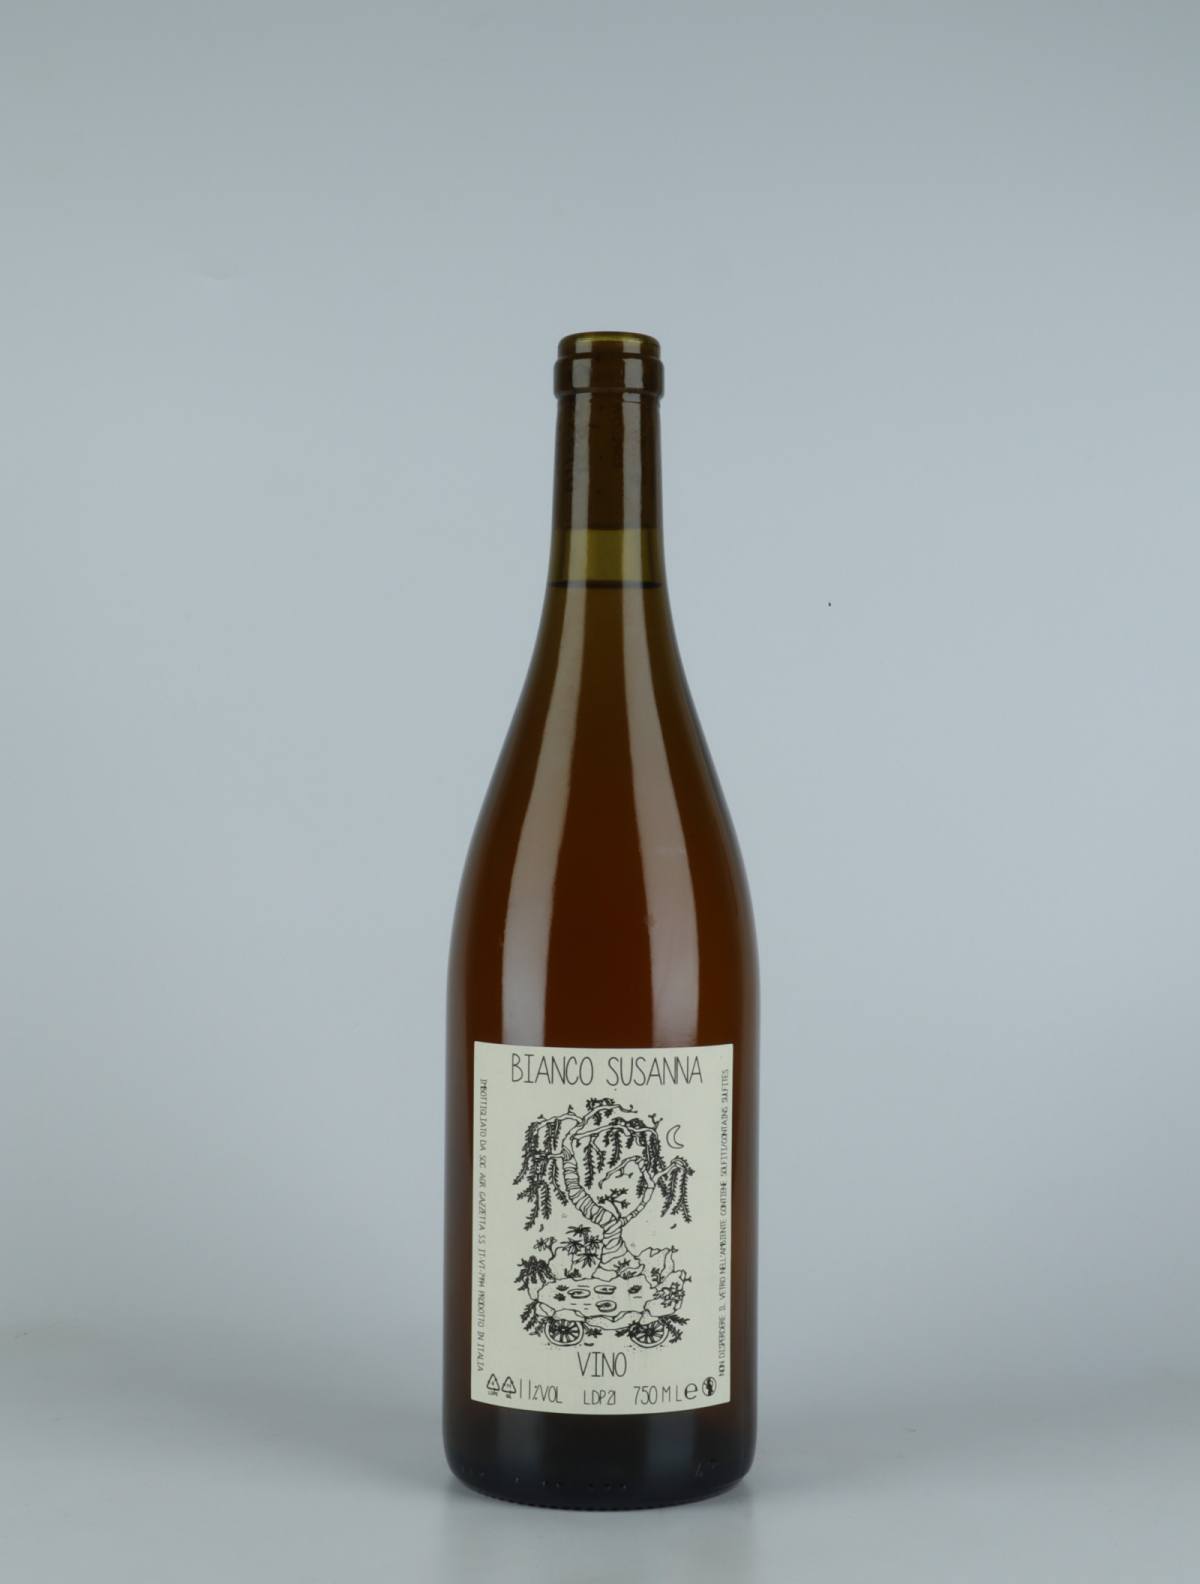 A bottle 2021 Vino Bianco Susanna White wine from Gazzetta, Lazio in Italy